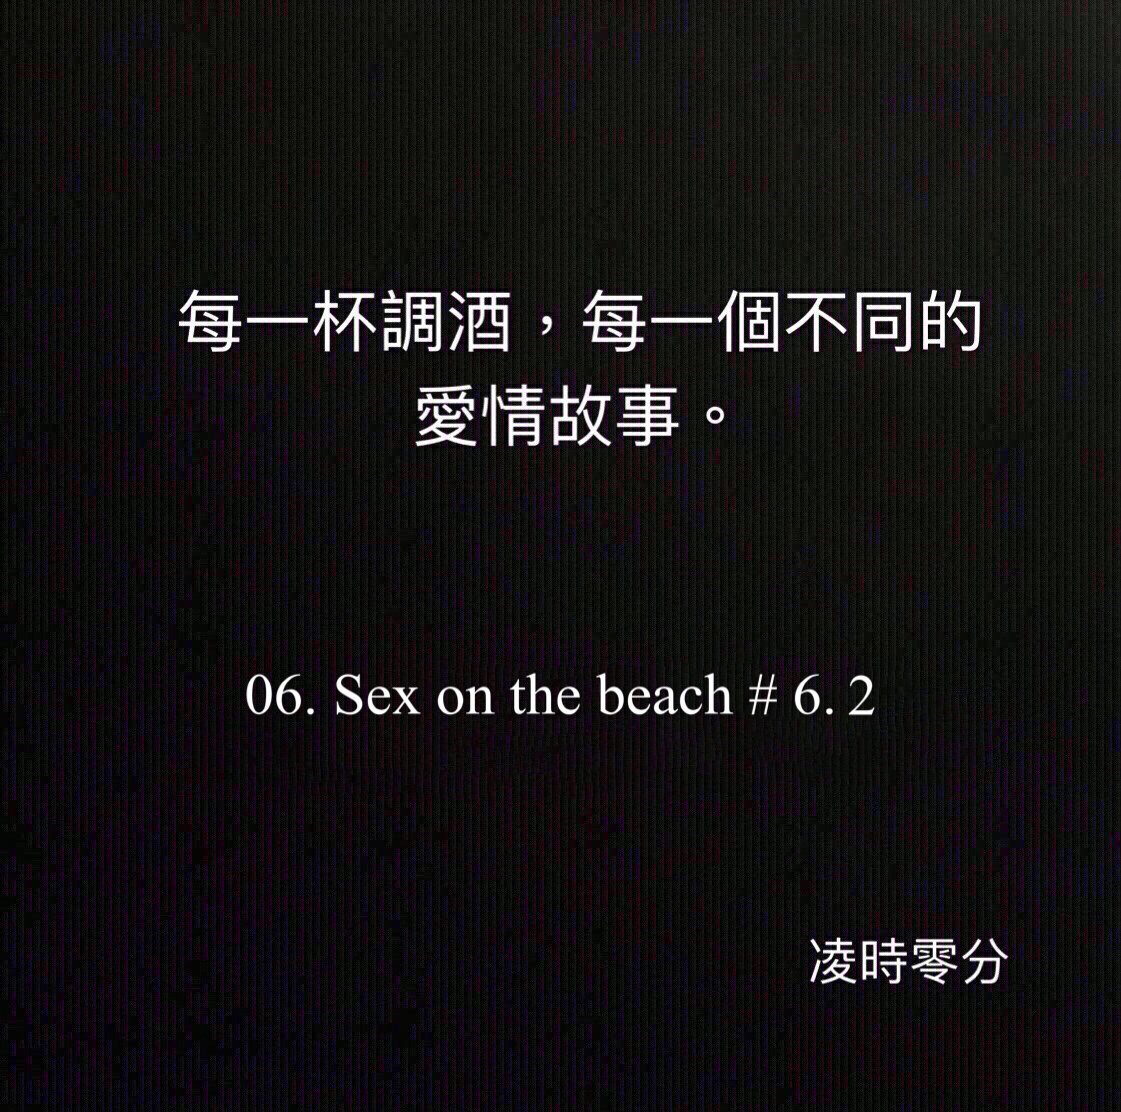 （短篇故事）每一杯調酒，每一個不同的愛情故事 06. Sex on the beach #6.2